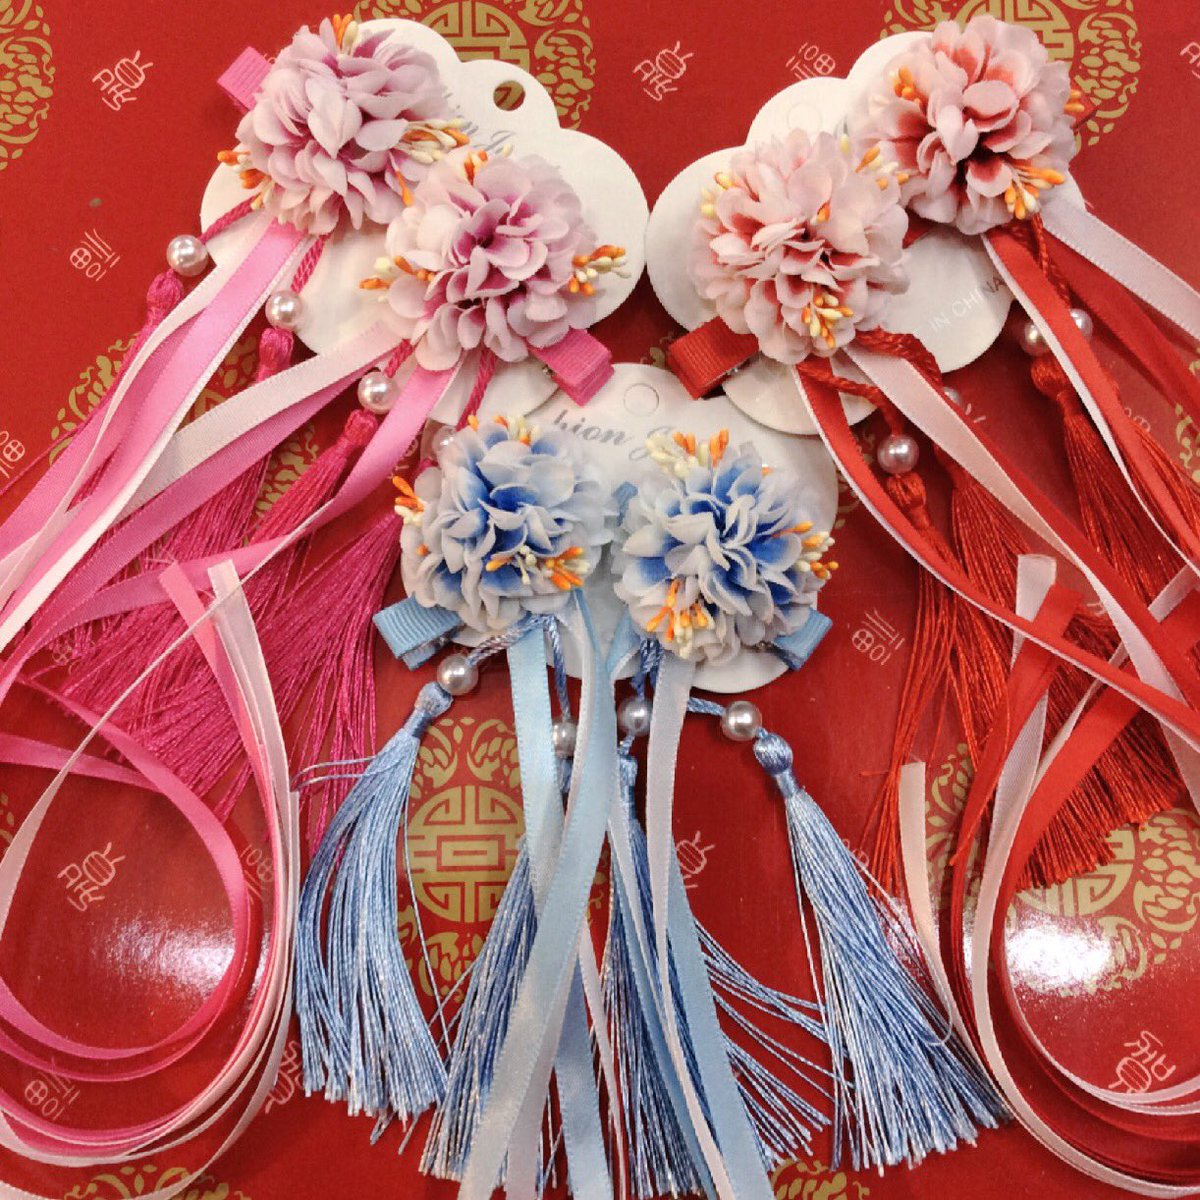 老維新 ろういしん 横浜中華街 V Twitter とっても可愛いお花のチャイナ髪飾り 入荷しました チャイナドレスや漢服 唐装にいかがでしょうか